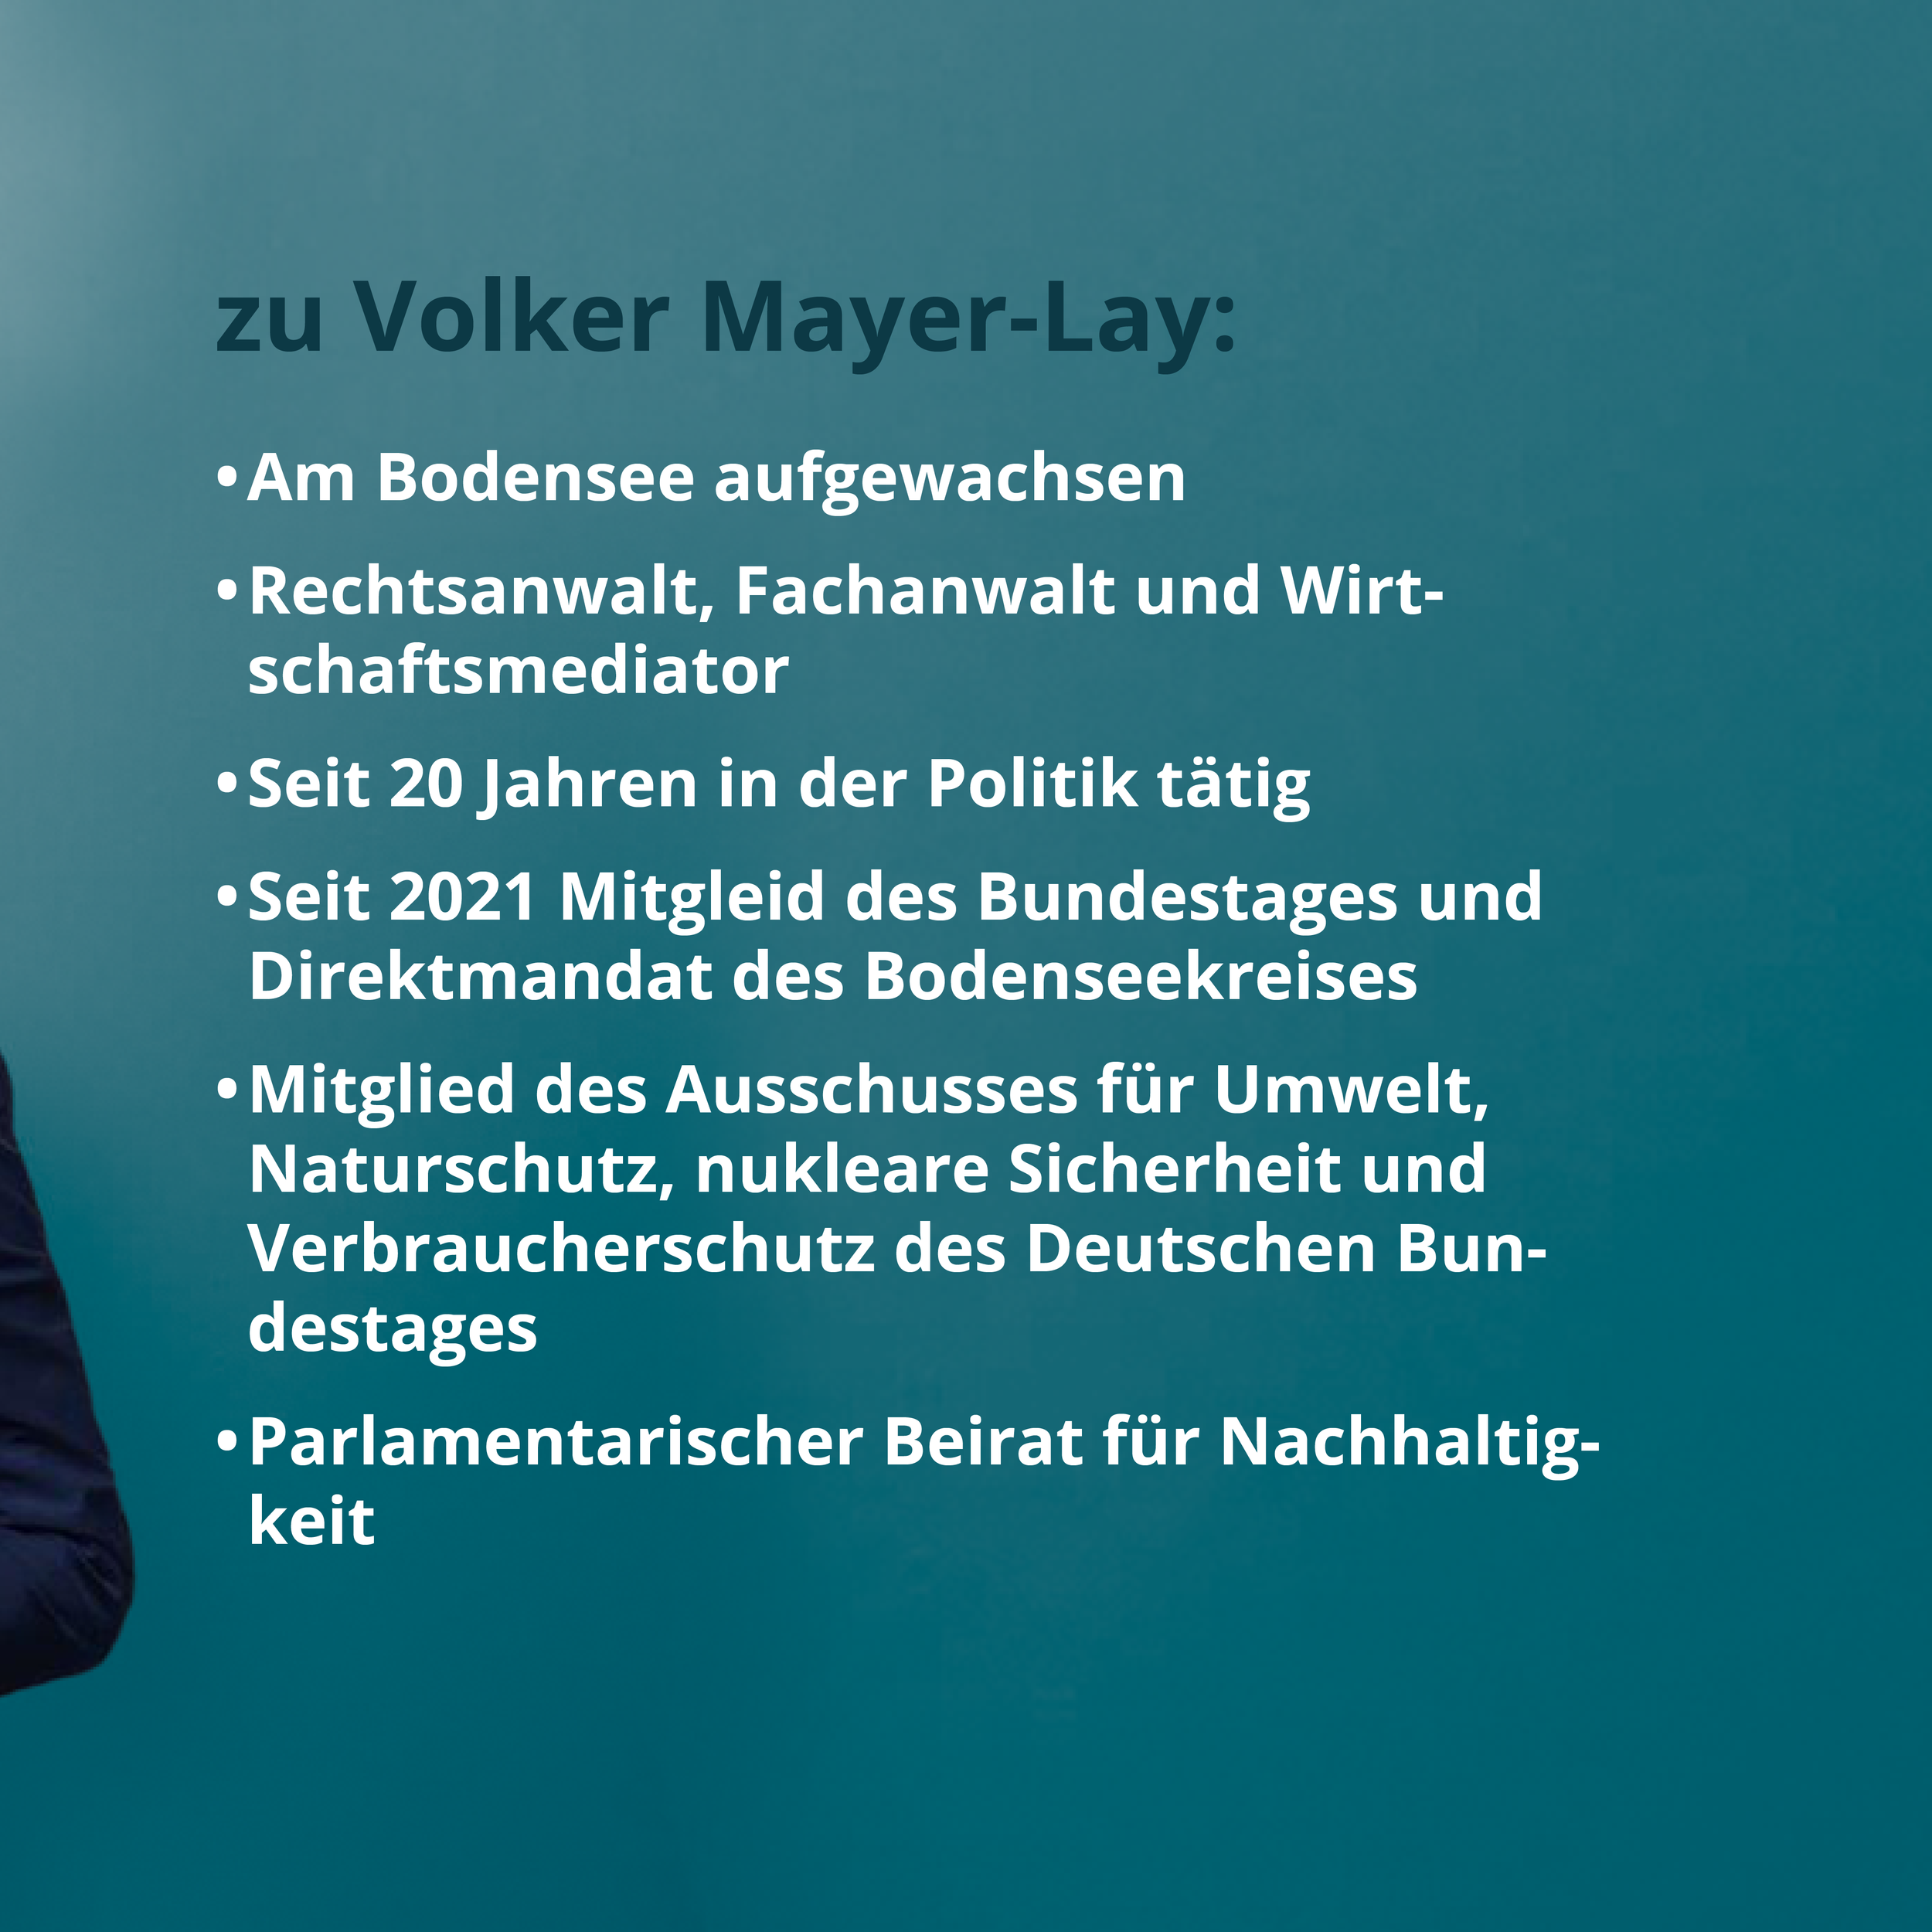 GT_Volker_Mayer-Lay_2.png